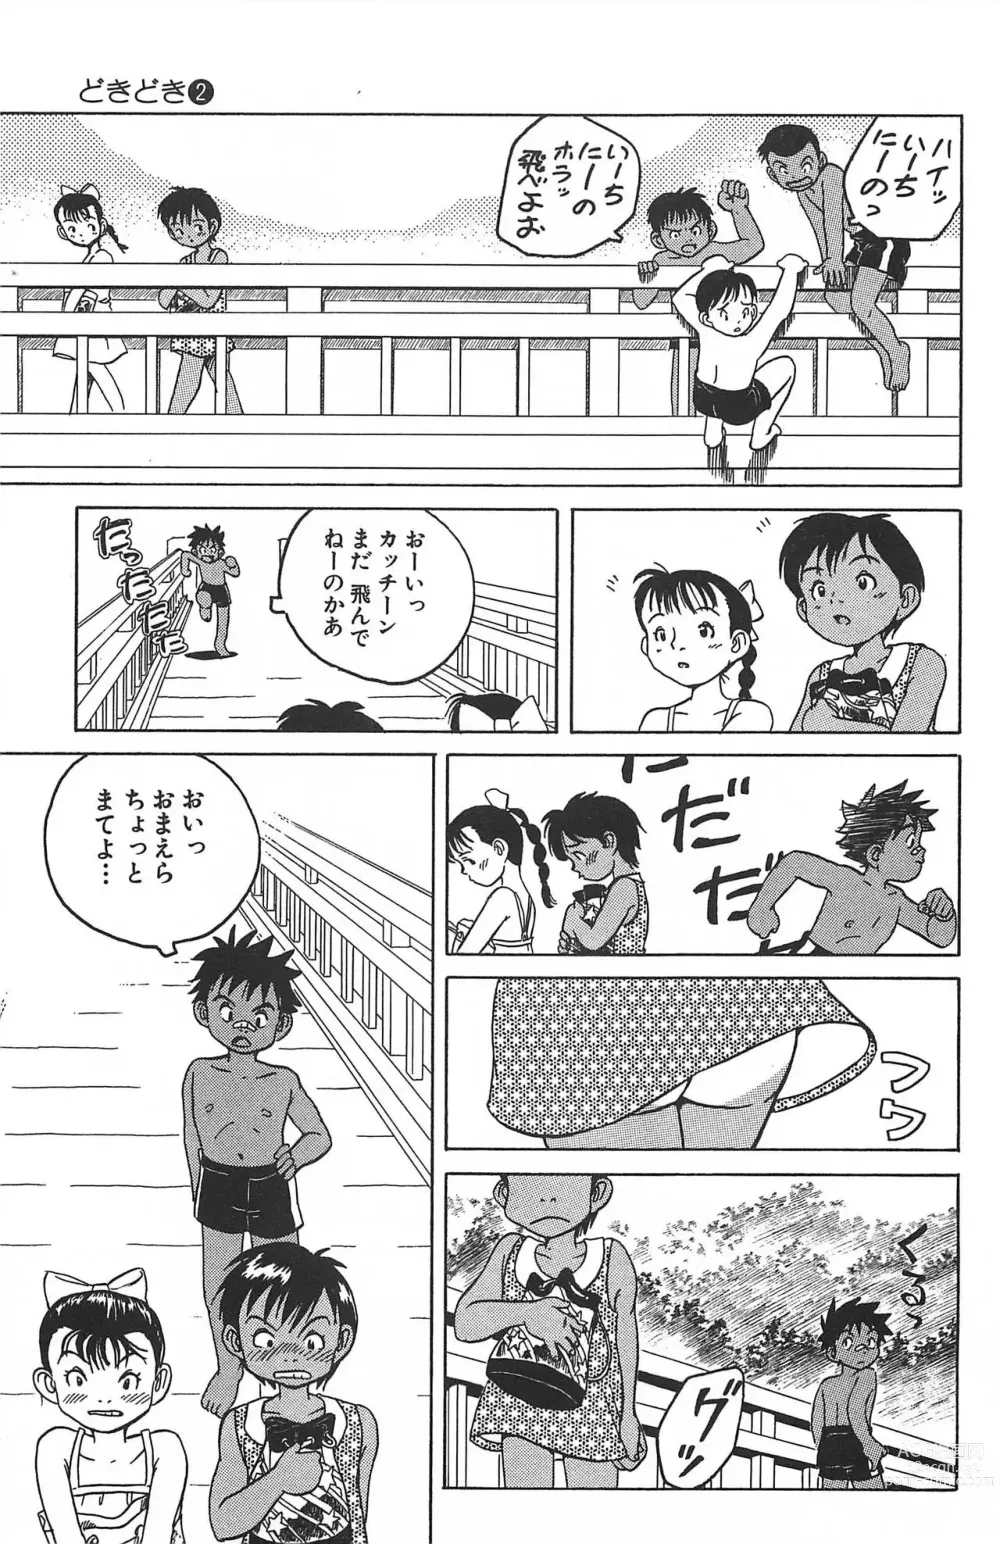 Page 16 of manga Dokidoki